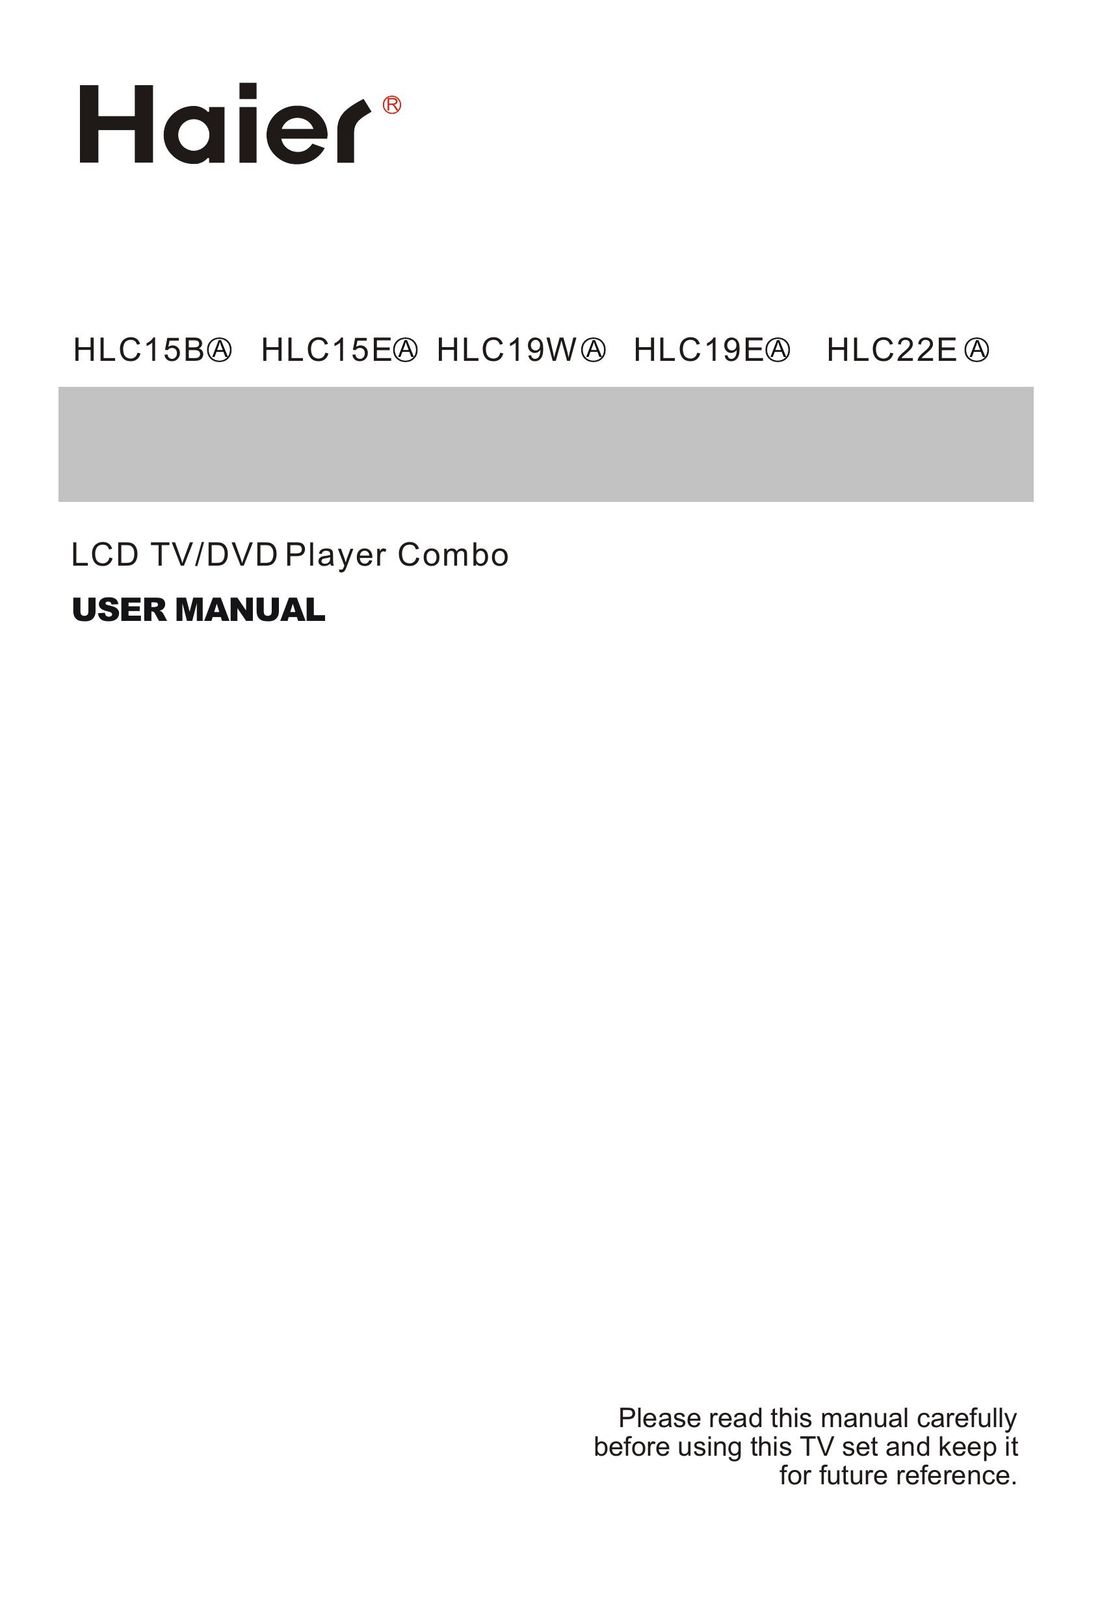 Haier HLC22E TV DVD Combo User Manual